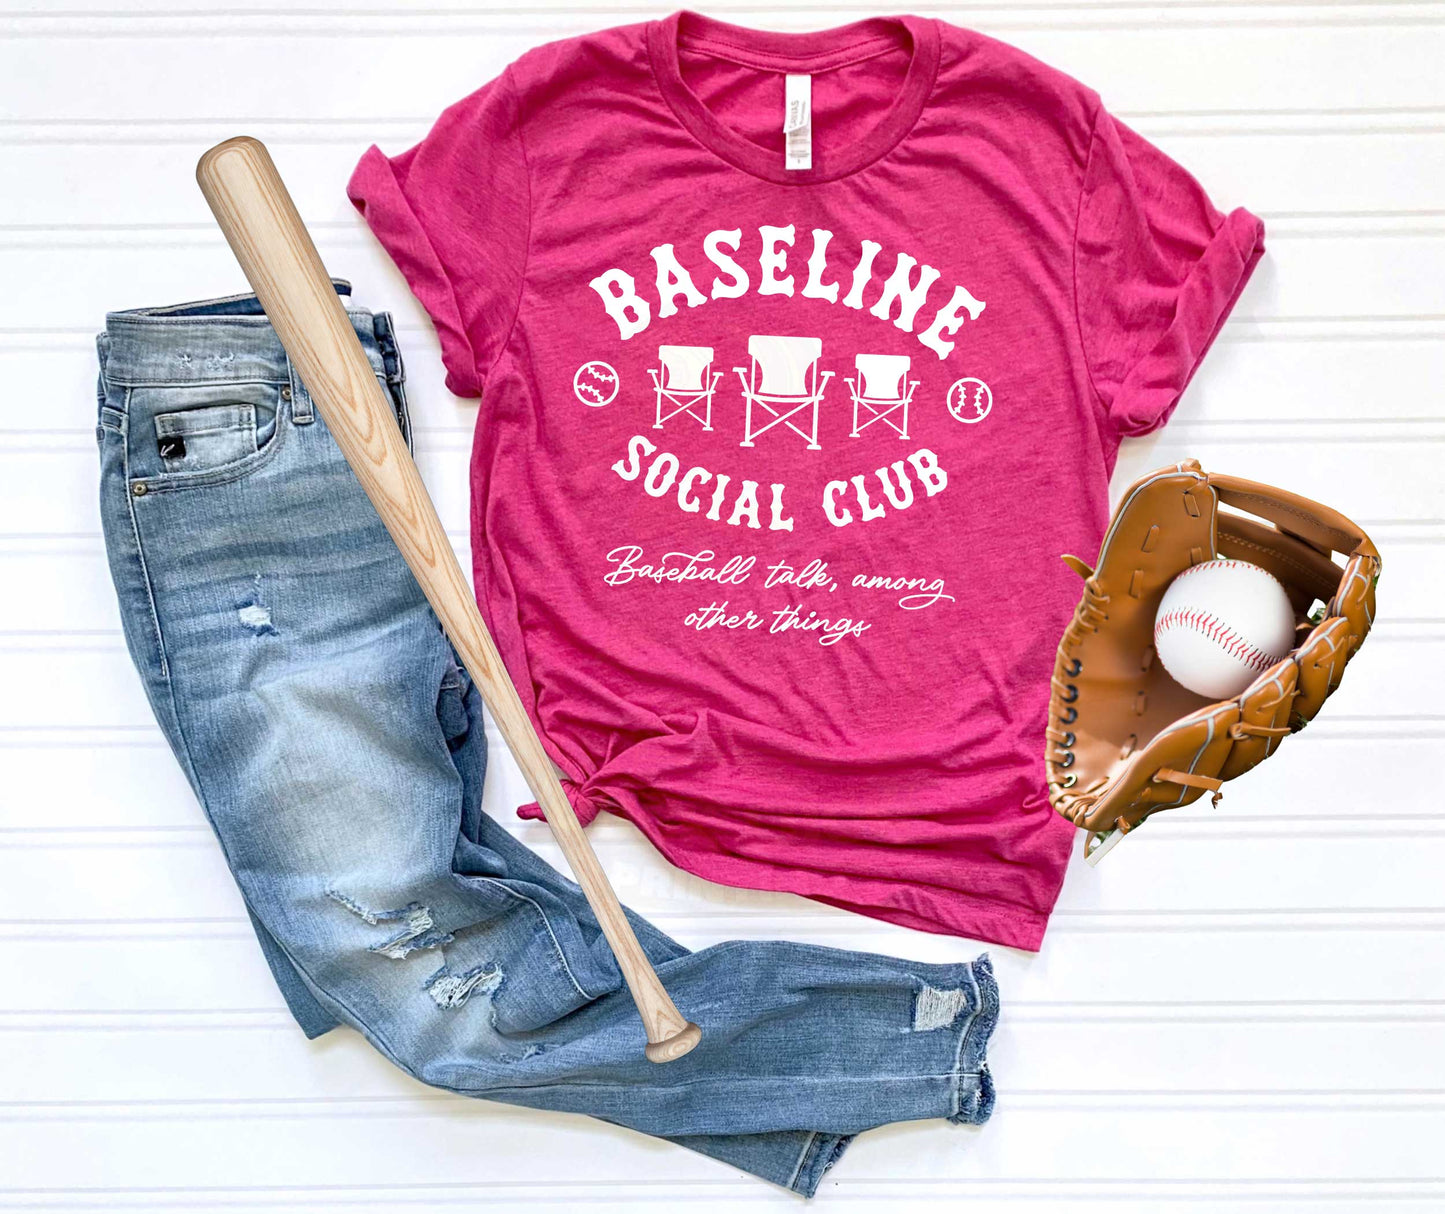 Basebline Social Club_Shirt